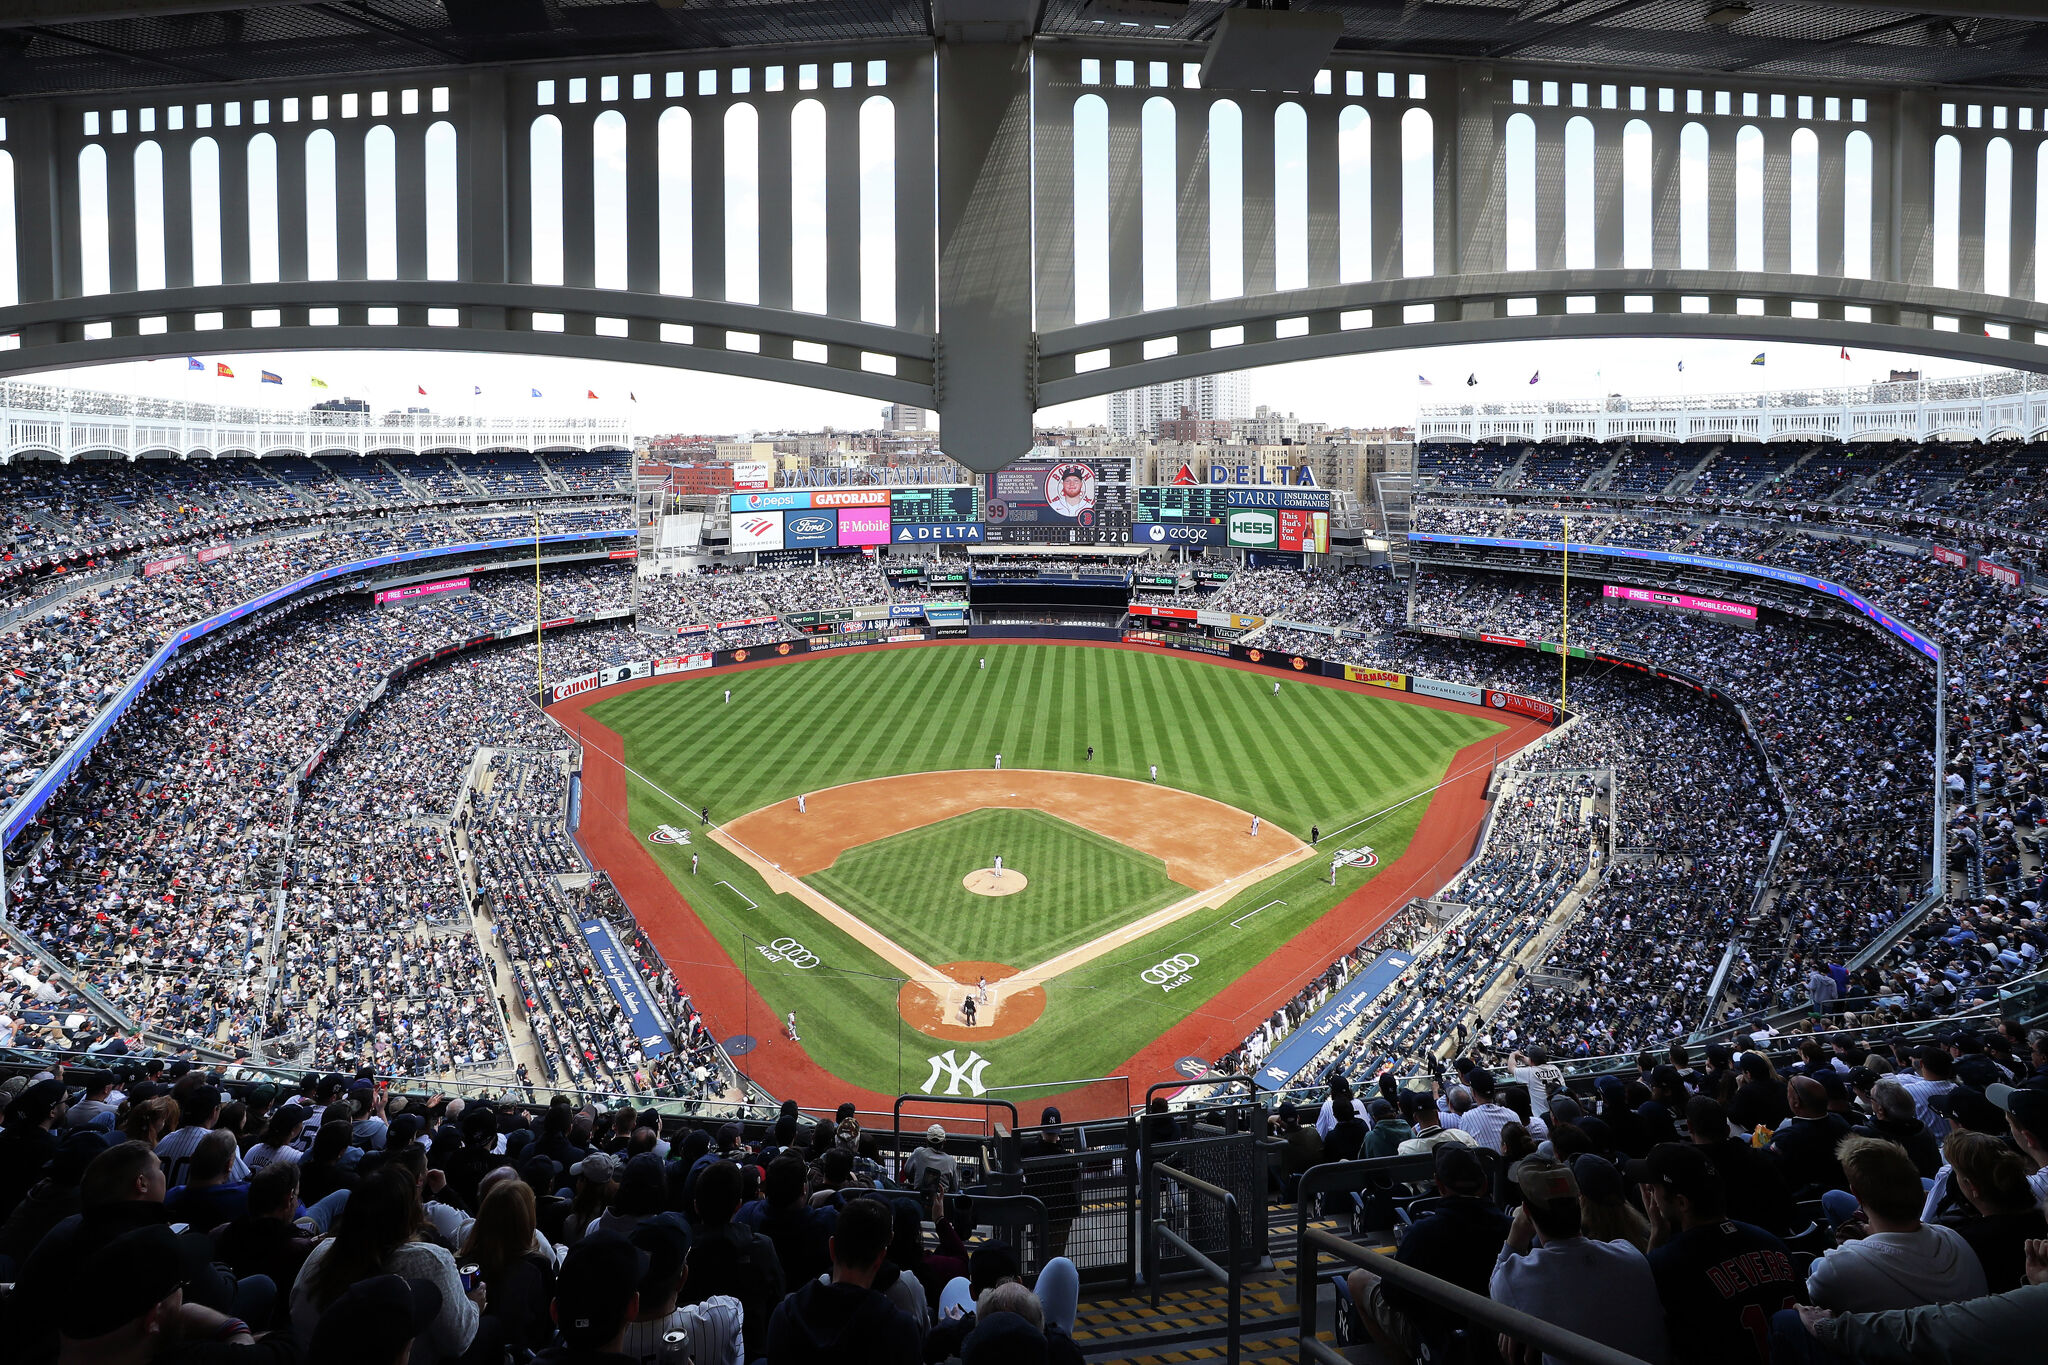 HD wallpaper: New York Yankees Stadium, baseball stadium, field, crowd,  stand